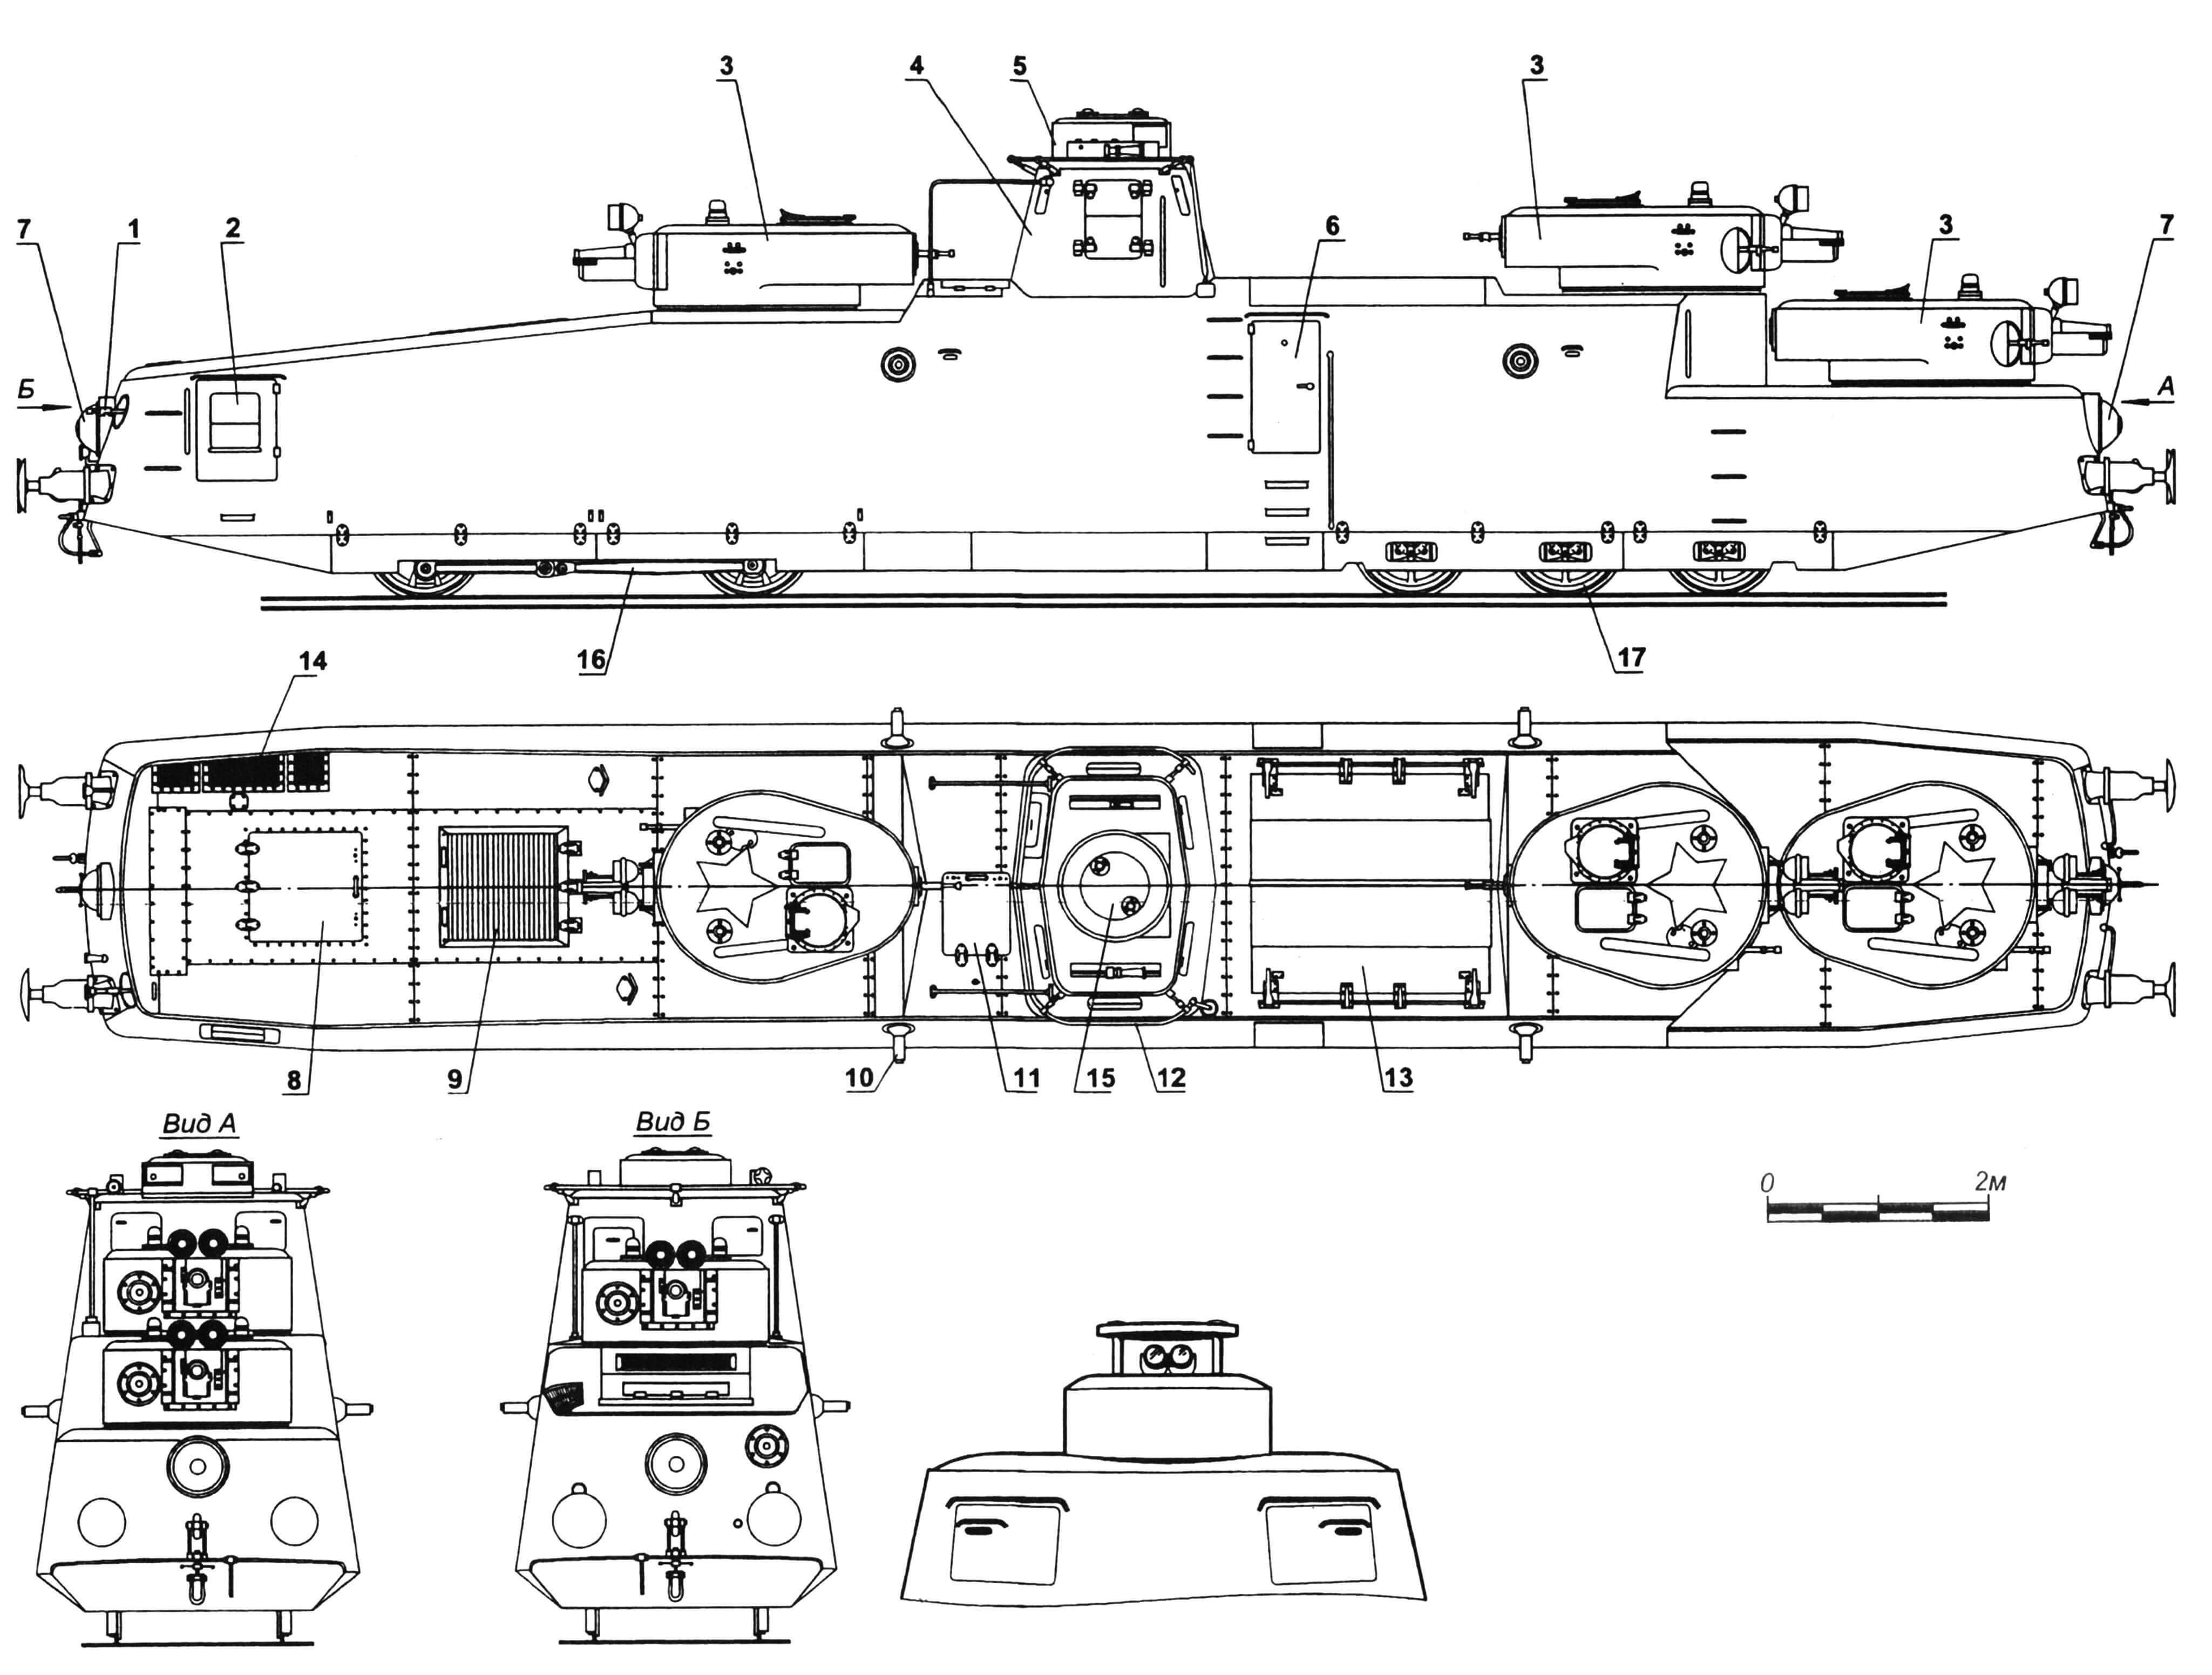 Мотоброневагон МБВ-2: 1 — пулемет кормовой; 2 — дверь для посадки пулеметчика; 3 — башни орудийные; 4 — рубка; 5 — башенка с дальномером; 6 — дверь для посадки экипажа; 7 — кожух фары; 8 — люк для доступа к двигателю; 9 — люк с жалюзи для воздухопритока; 10 — бортовая установка пулемета «максим» (4 шт.); 11 — люк над прожекторным отсеком; 12 — антенна; 13 — люк над отсеком с зенитно-пулеметной установкой; 14 — решетка люка над радиатором; 15 — лючок над стереотрубой; 16 — тележка ведущая; 17 — тележка поддерживающая.